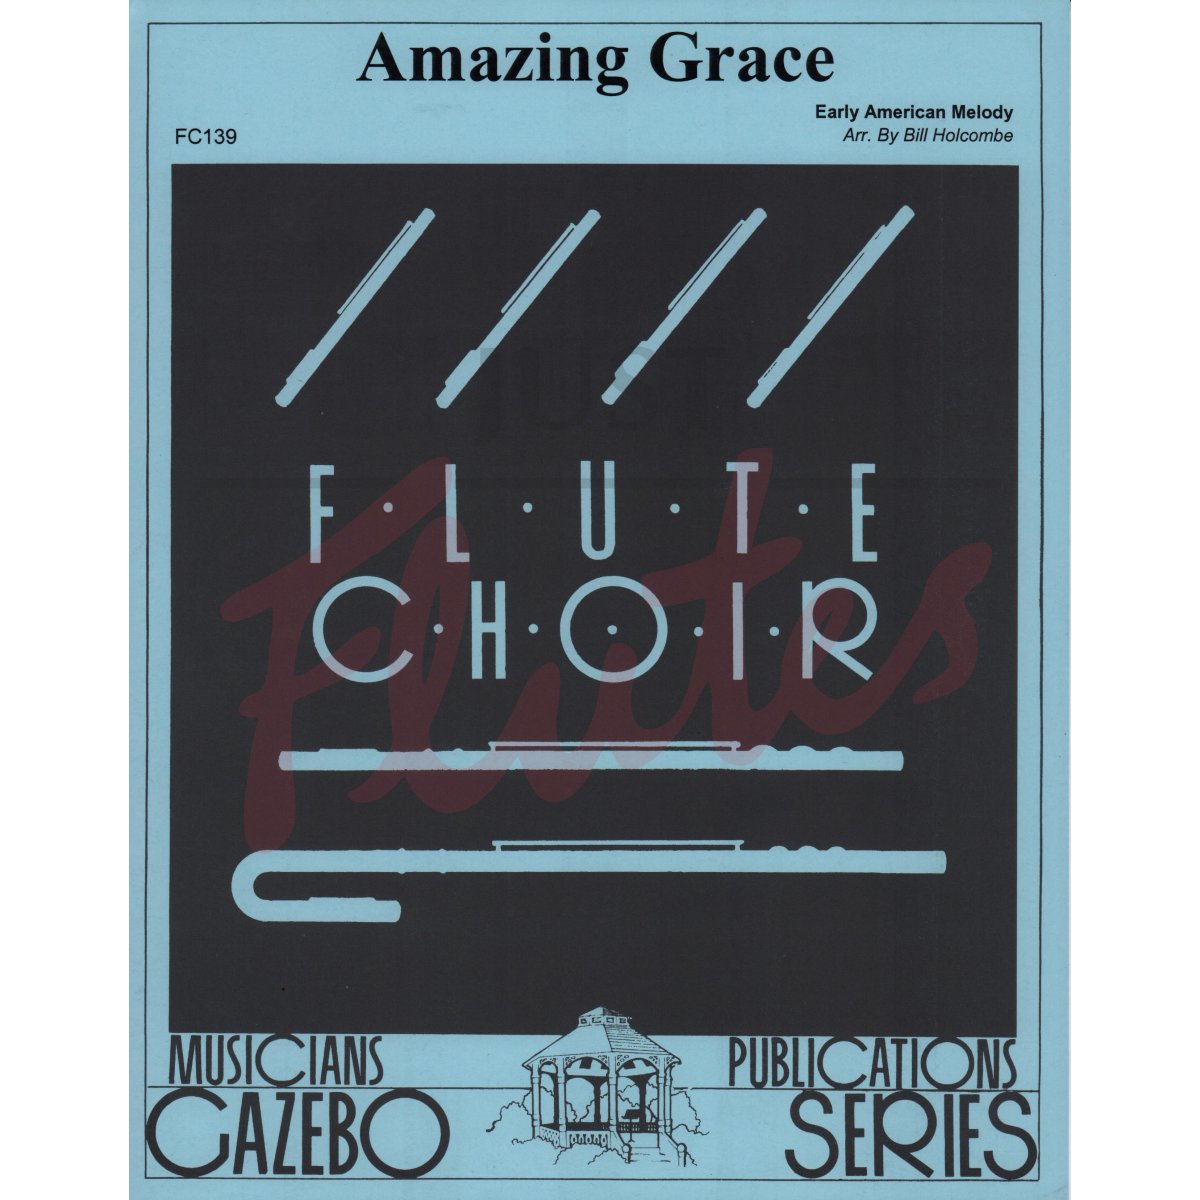 Amazing Grace for Flute Choir